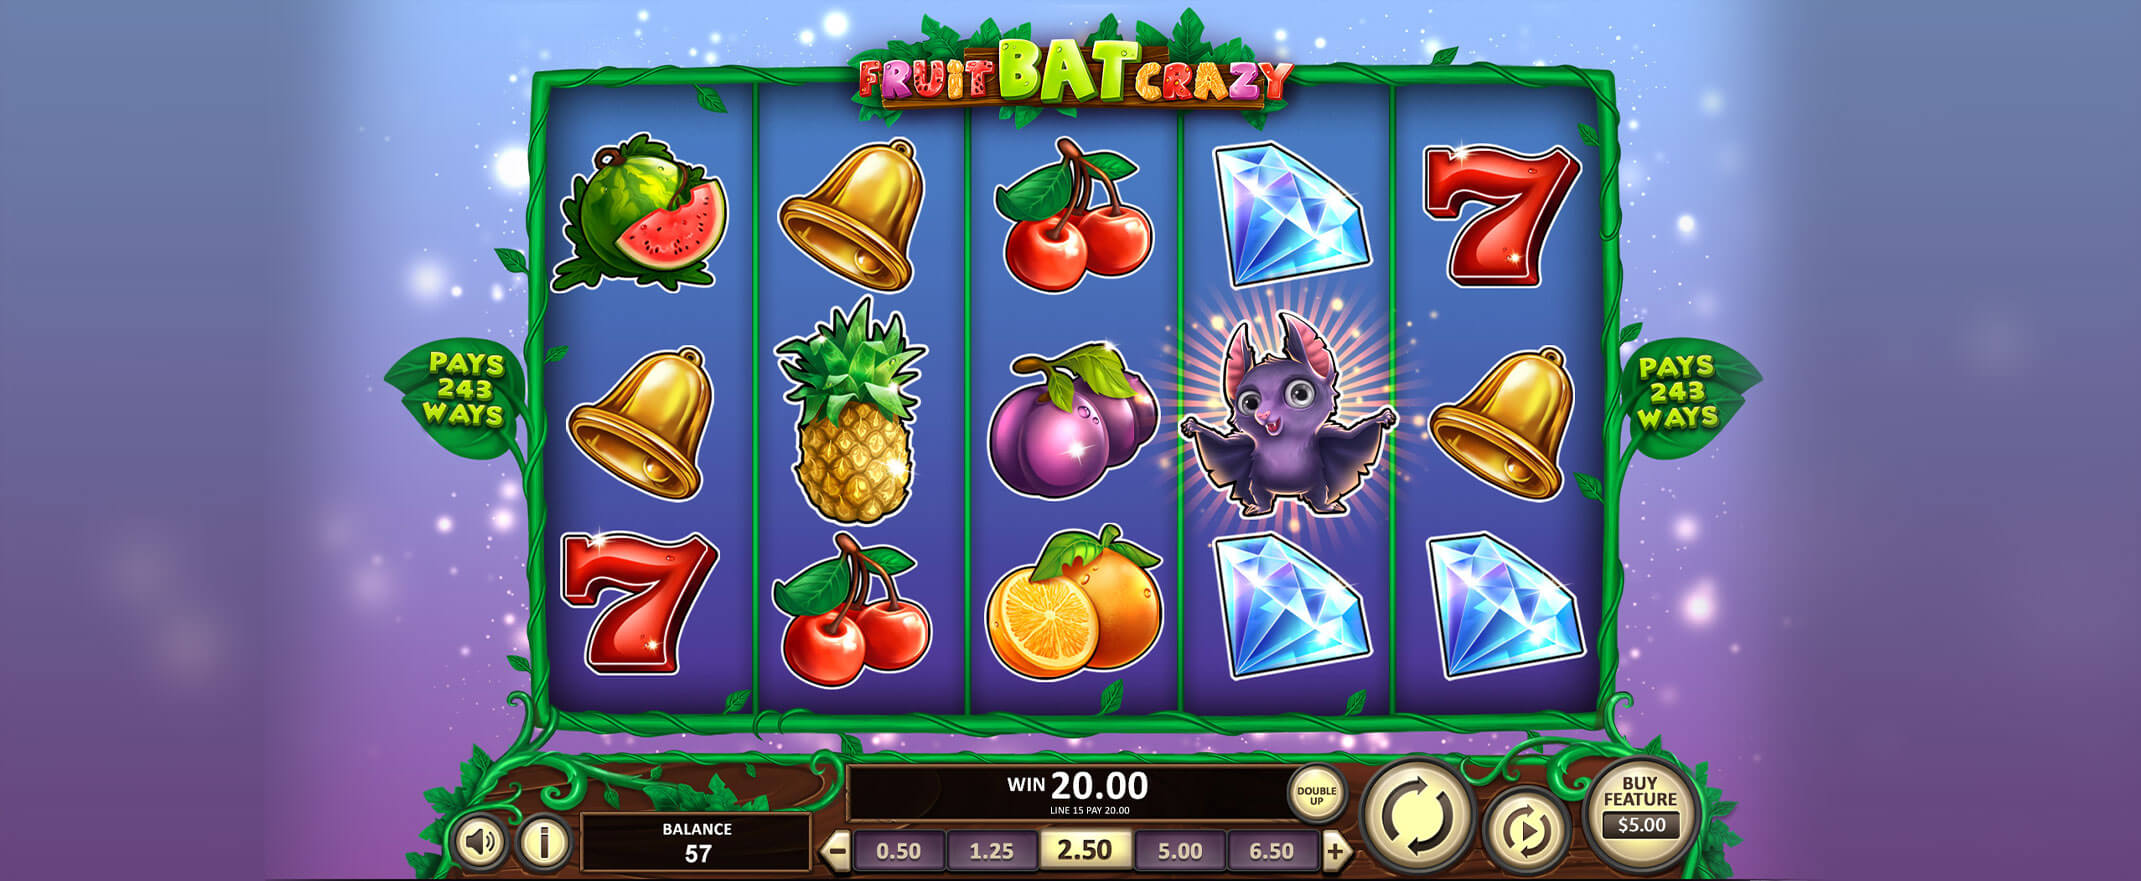 Fruit Bat Crazy peliautomaatti Betsoftilta